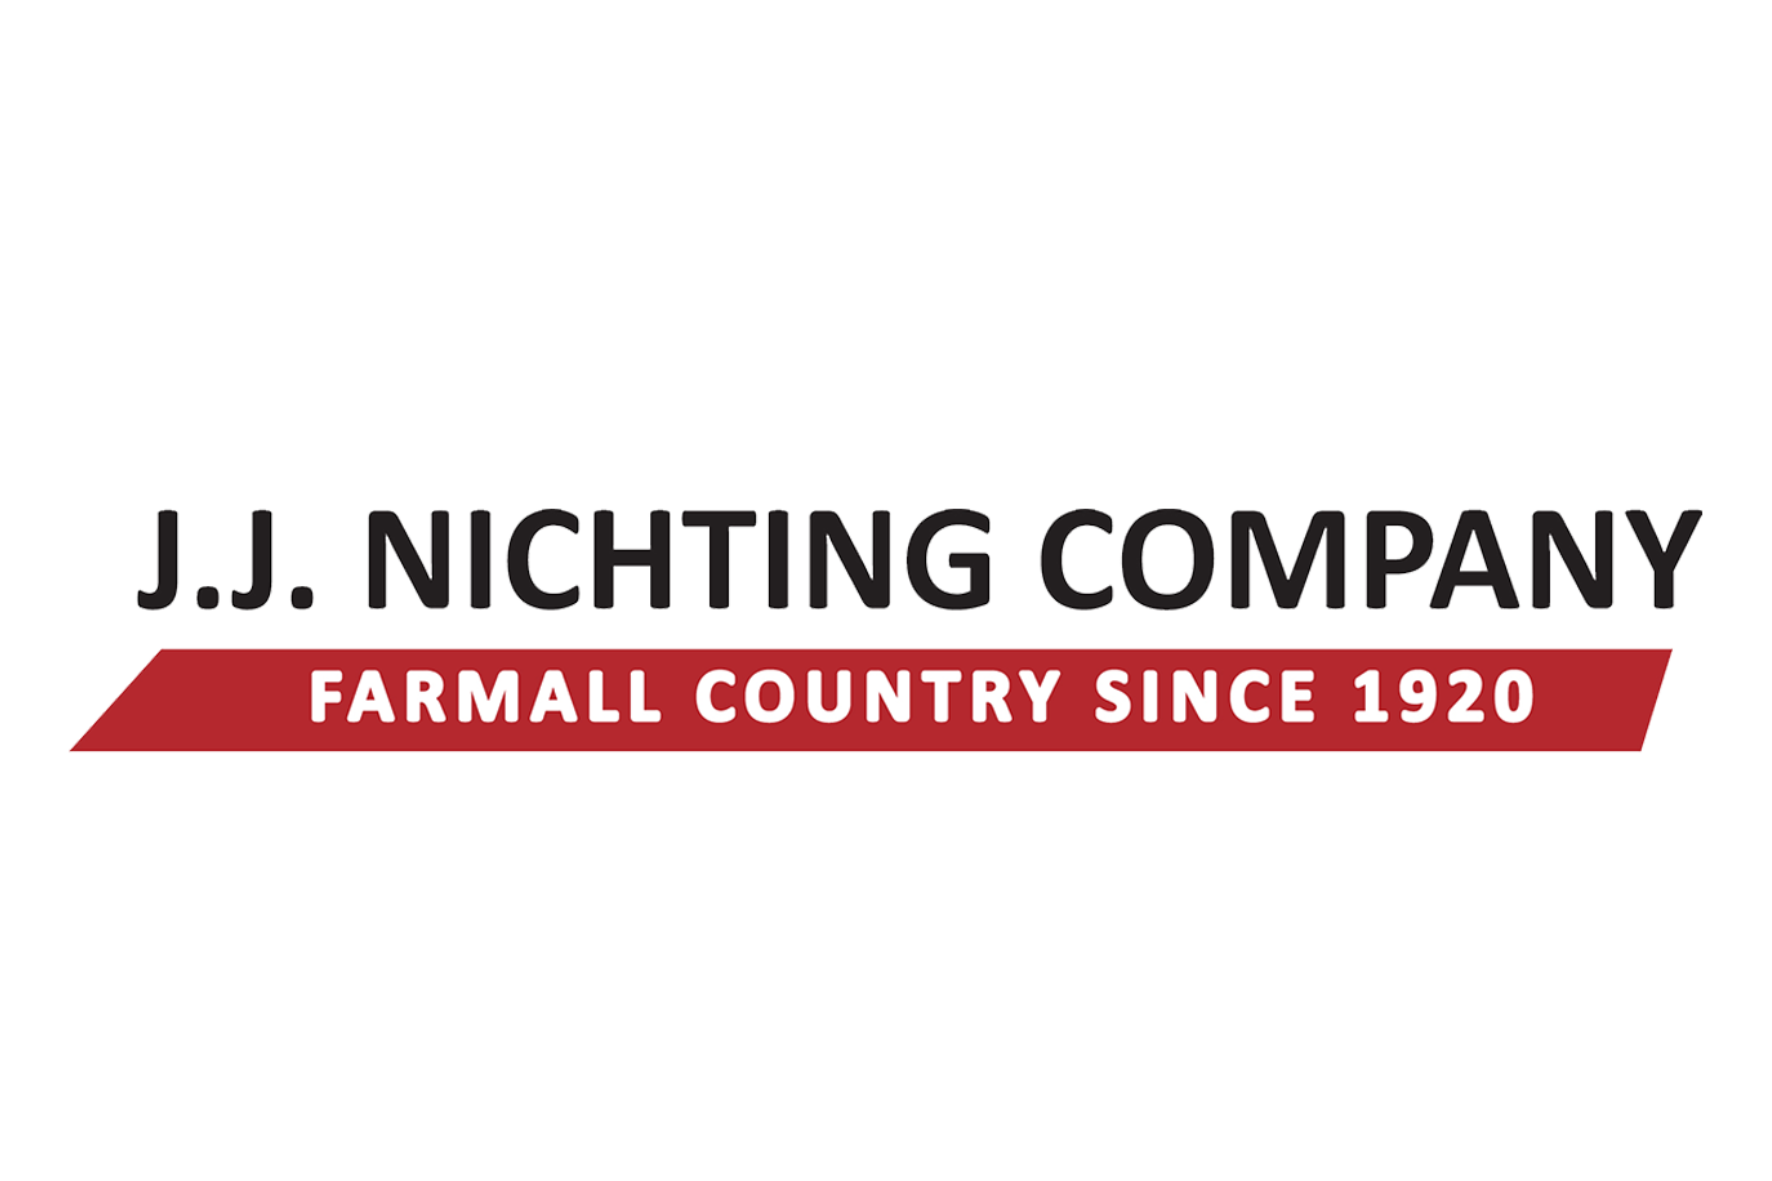 J.J. Nichting Company